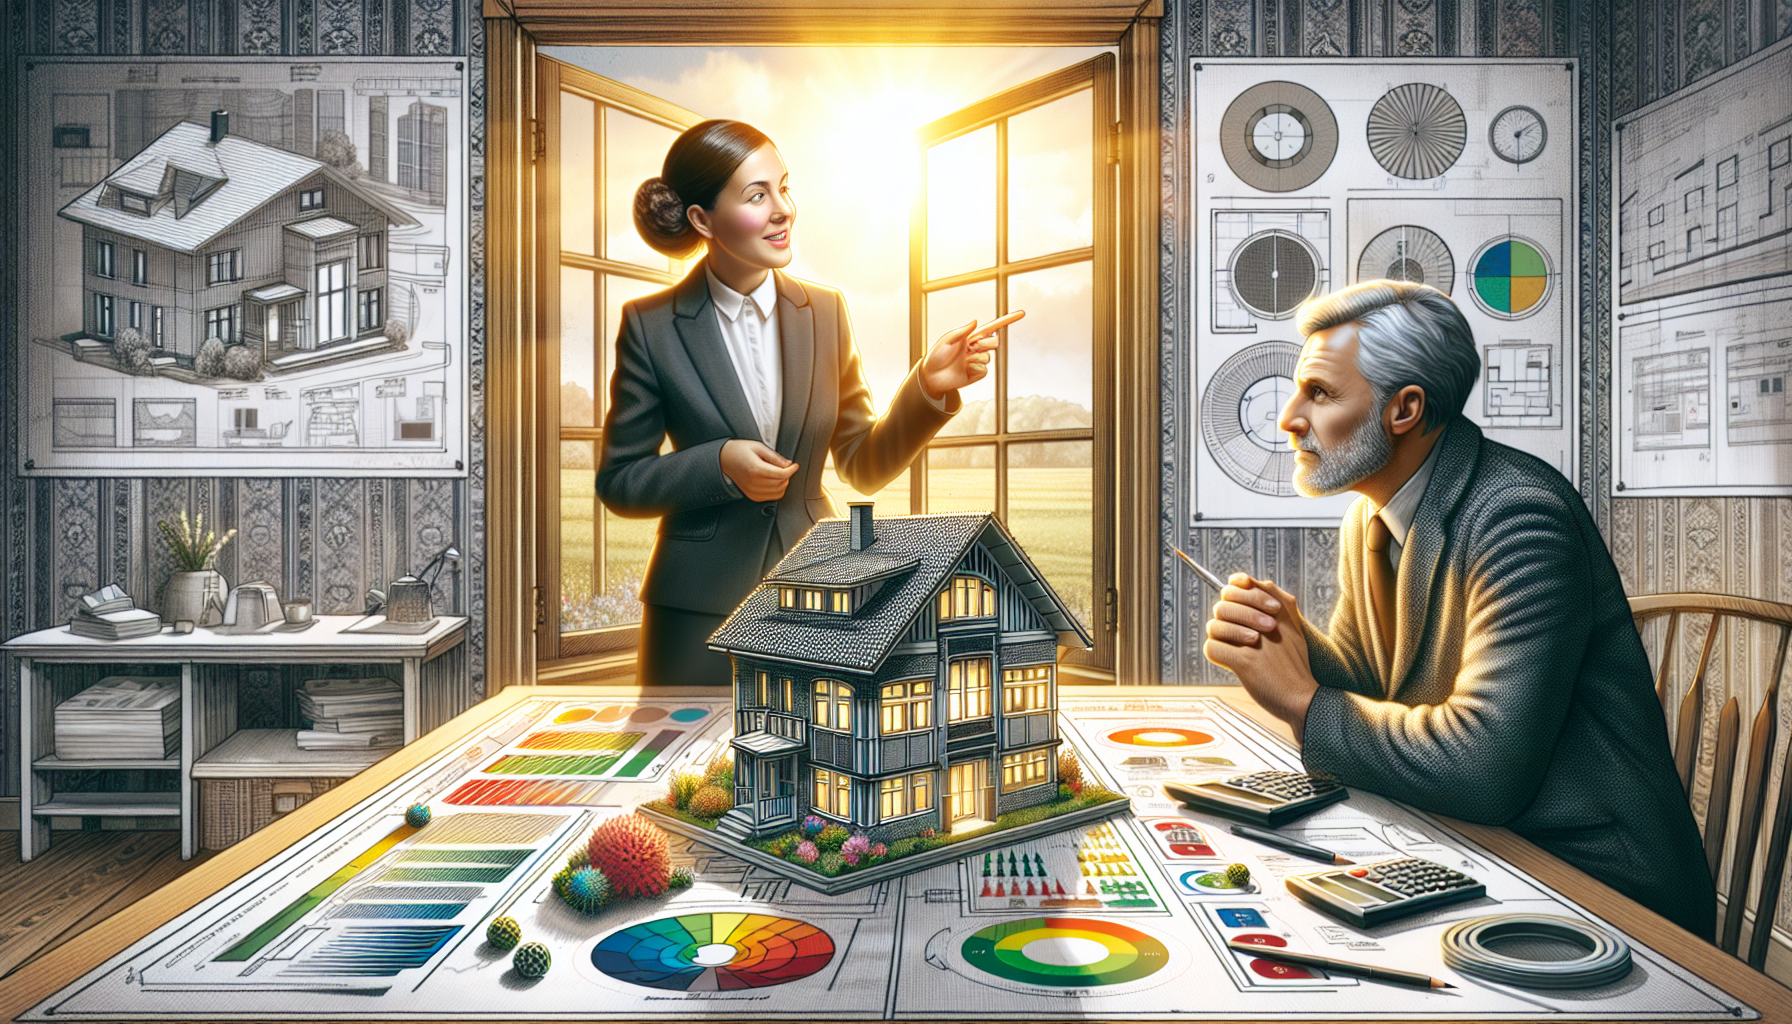 Illustration eines Energieberaters bei der Beratung zum Thema energetische Sanierung eines Hauses